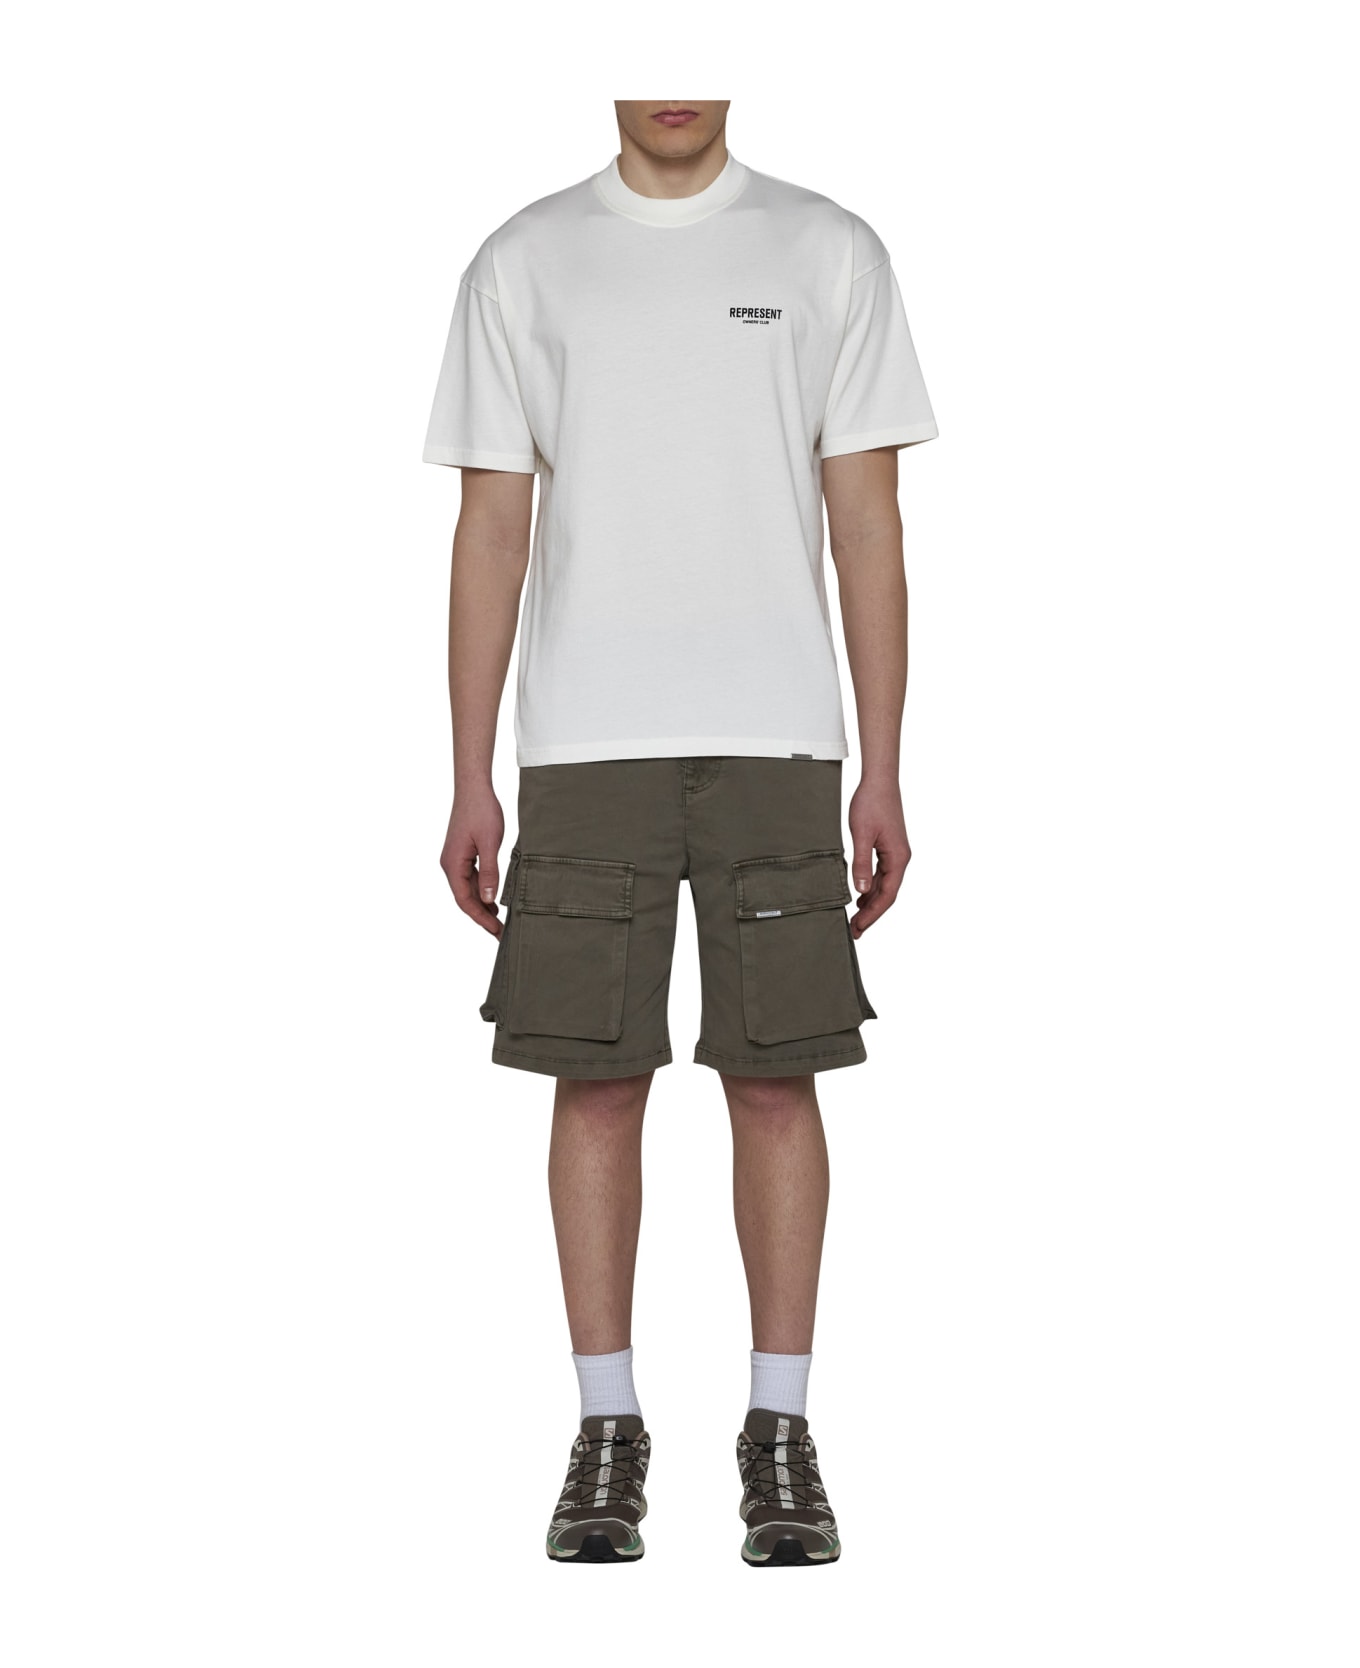 REPRESENT T-Shirt - Flat white